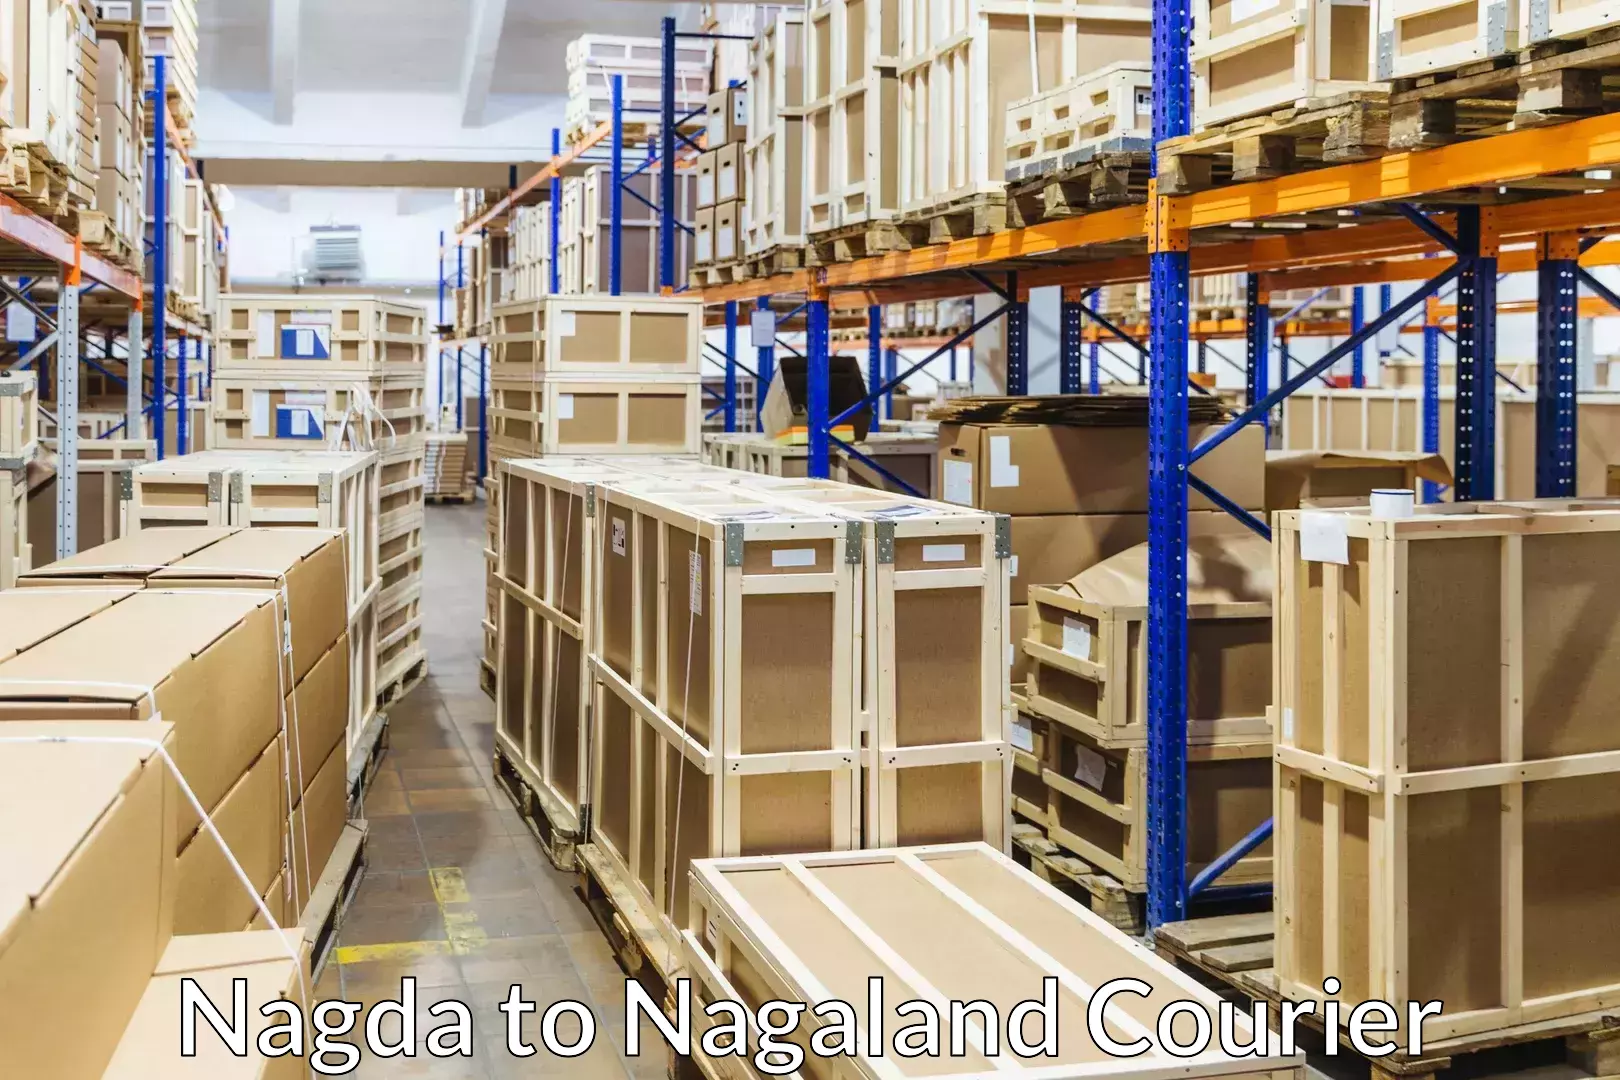 Furniture moving plans Nagda to Nagaland